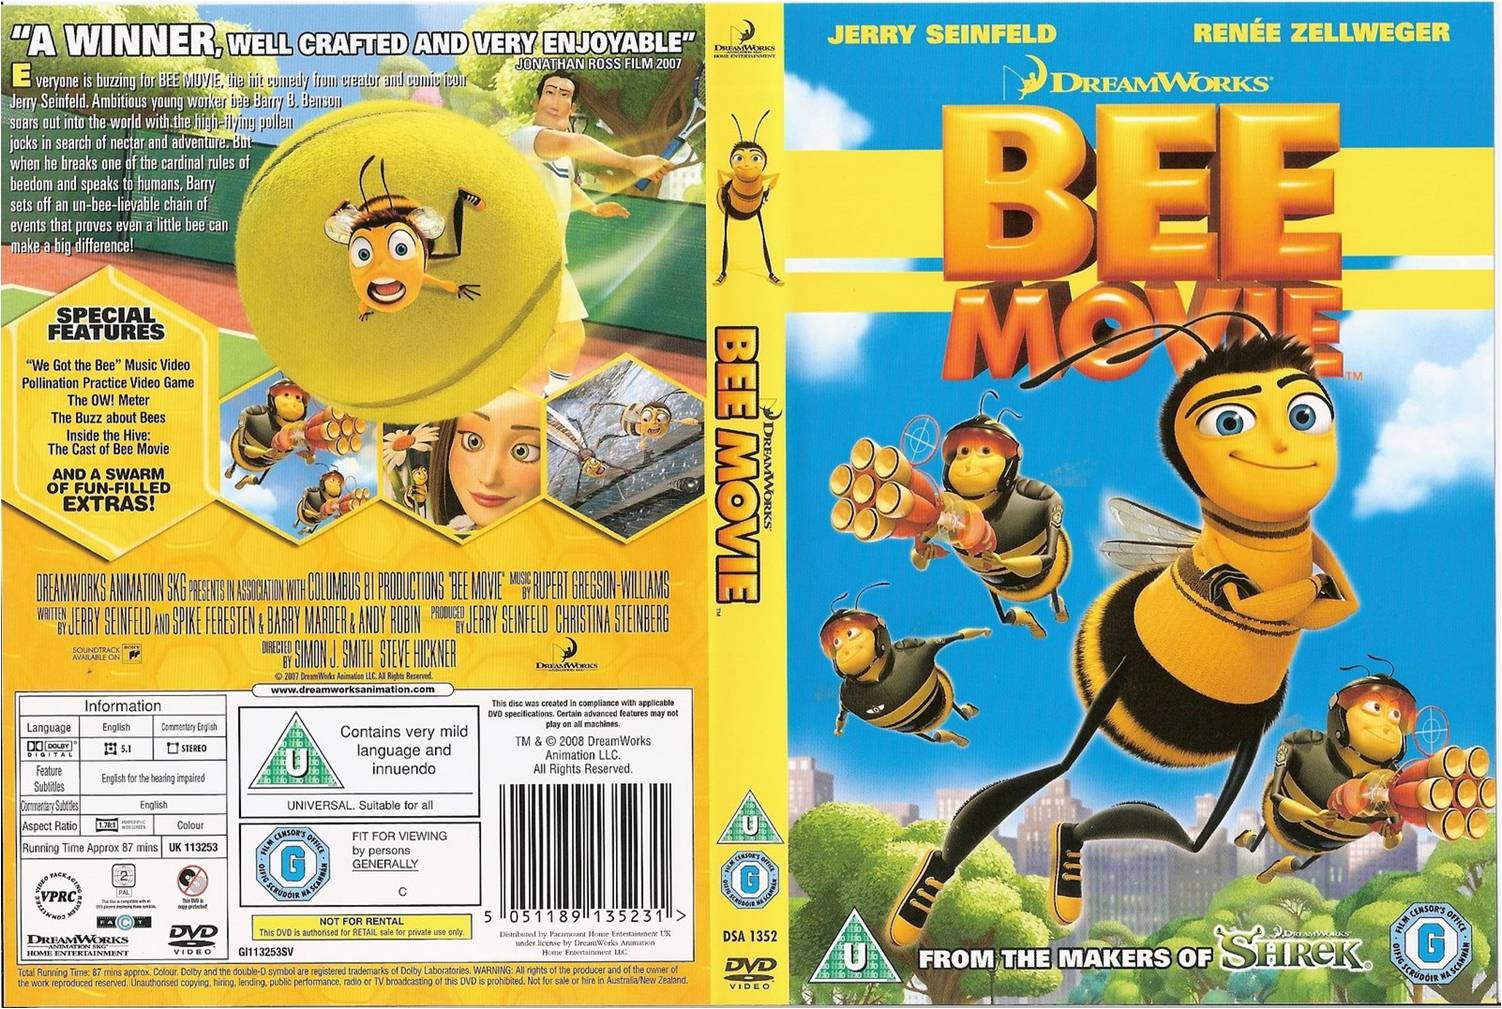 Bee Movie: A História de uma Abelha, Dublapédia